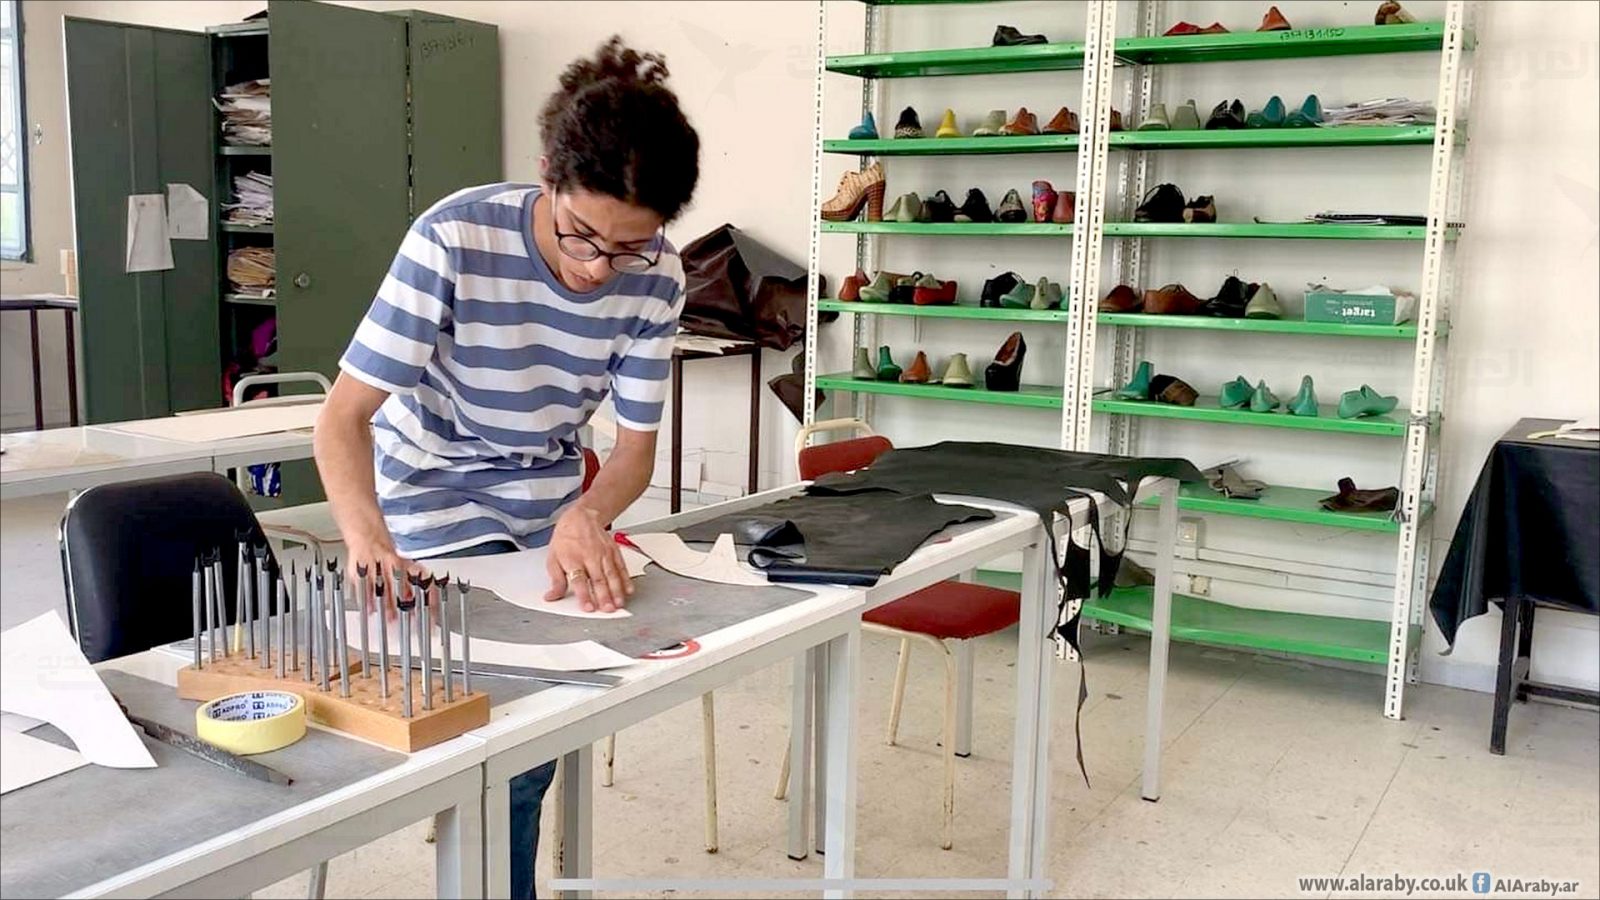 شاب تونسي يطور حذاء ذكيا يولد الكهرباء